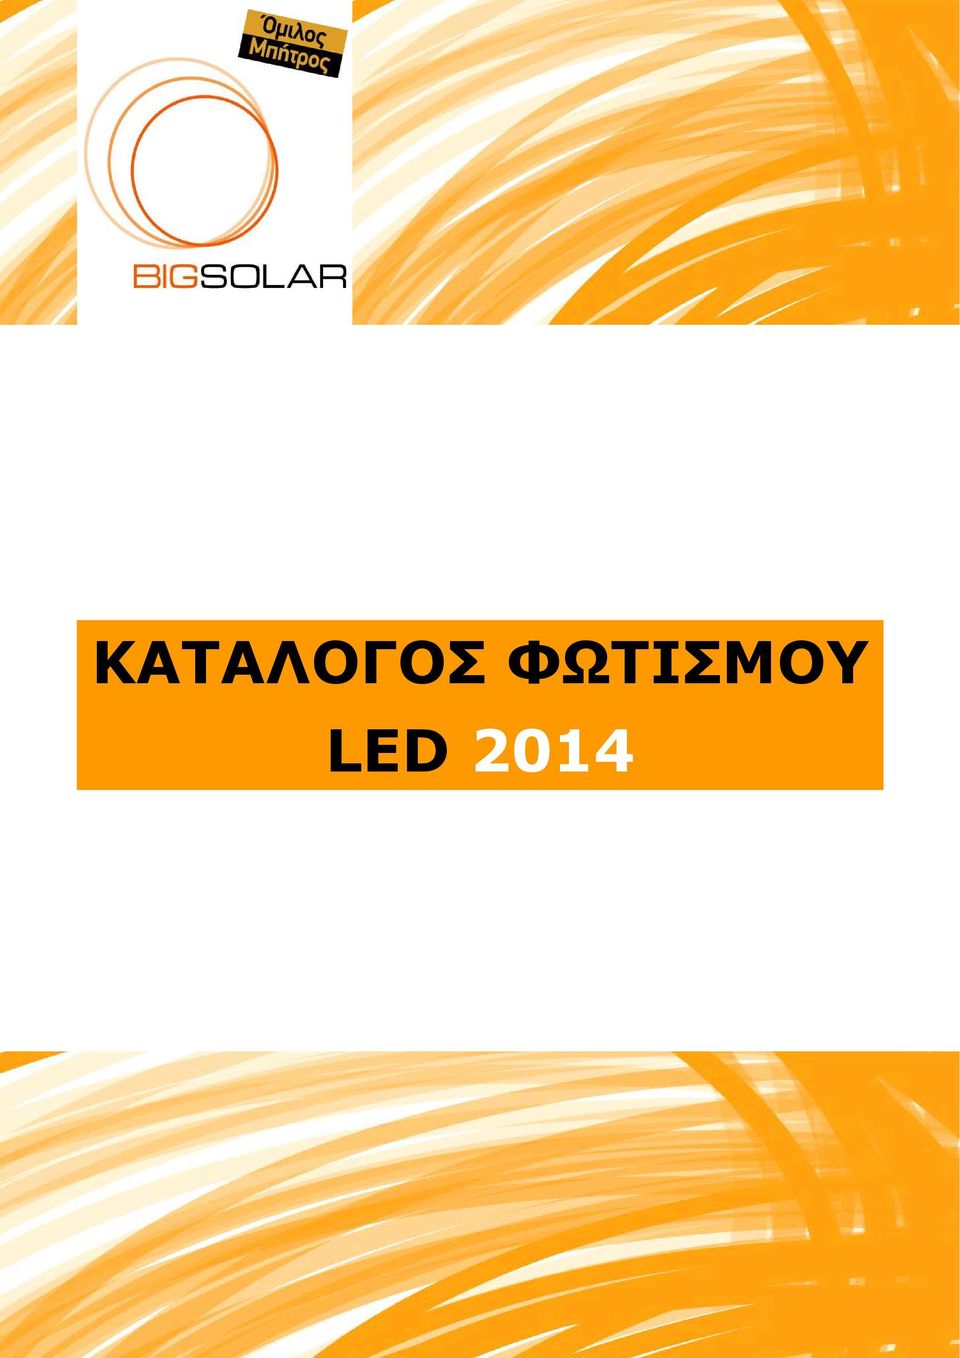 LED 2014